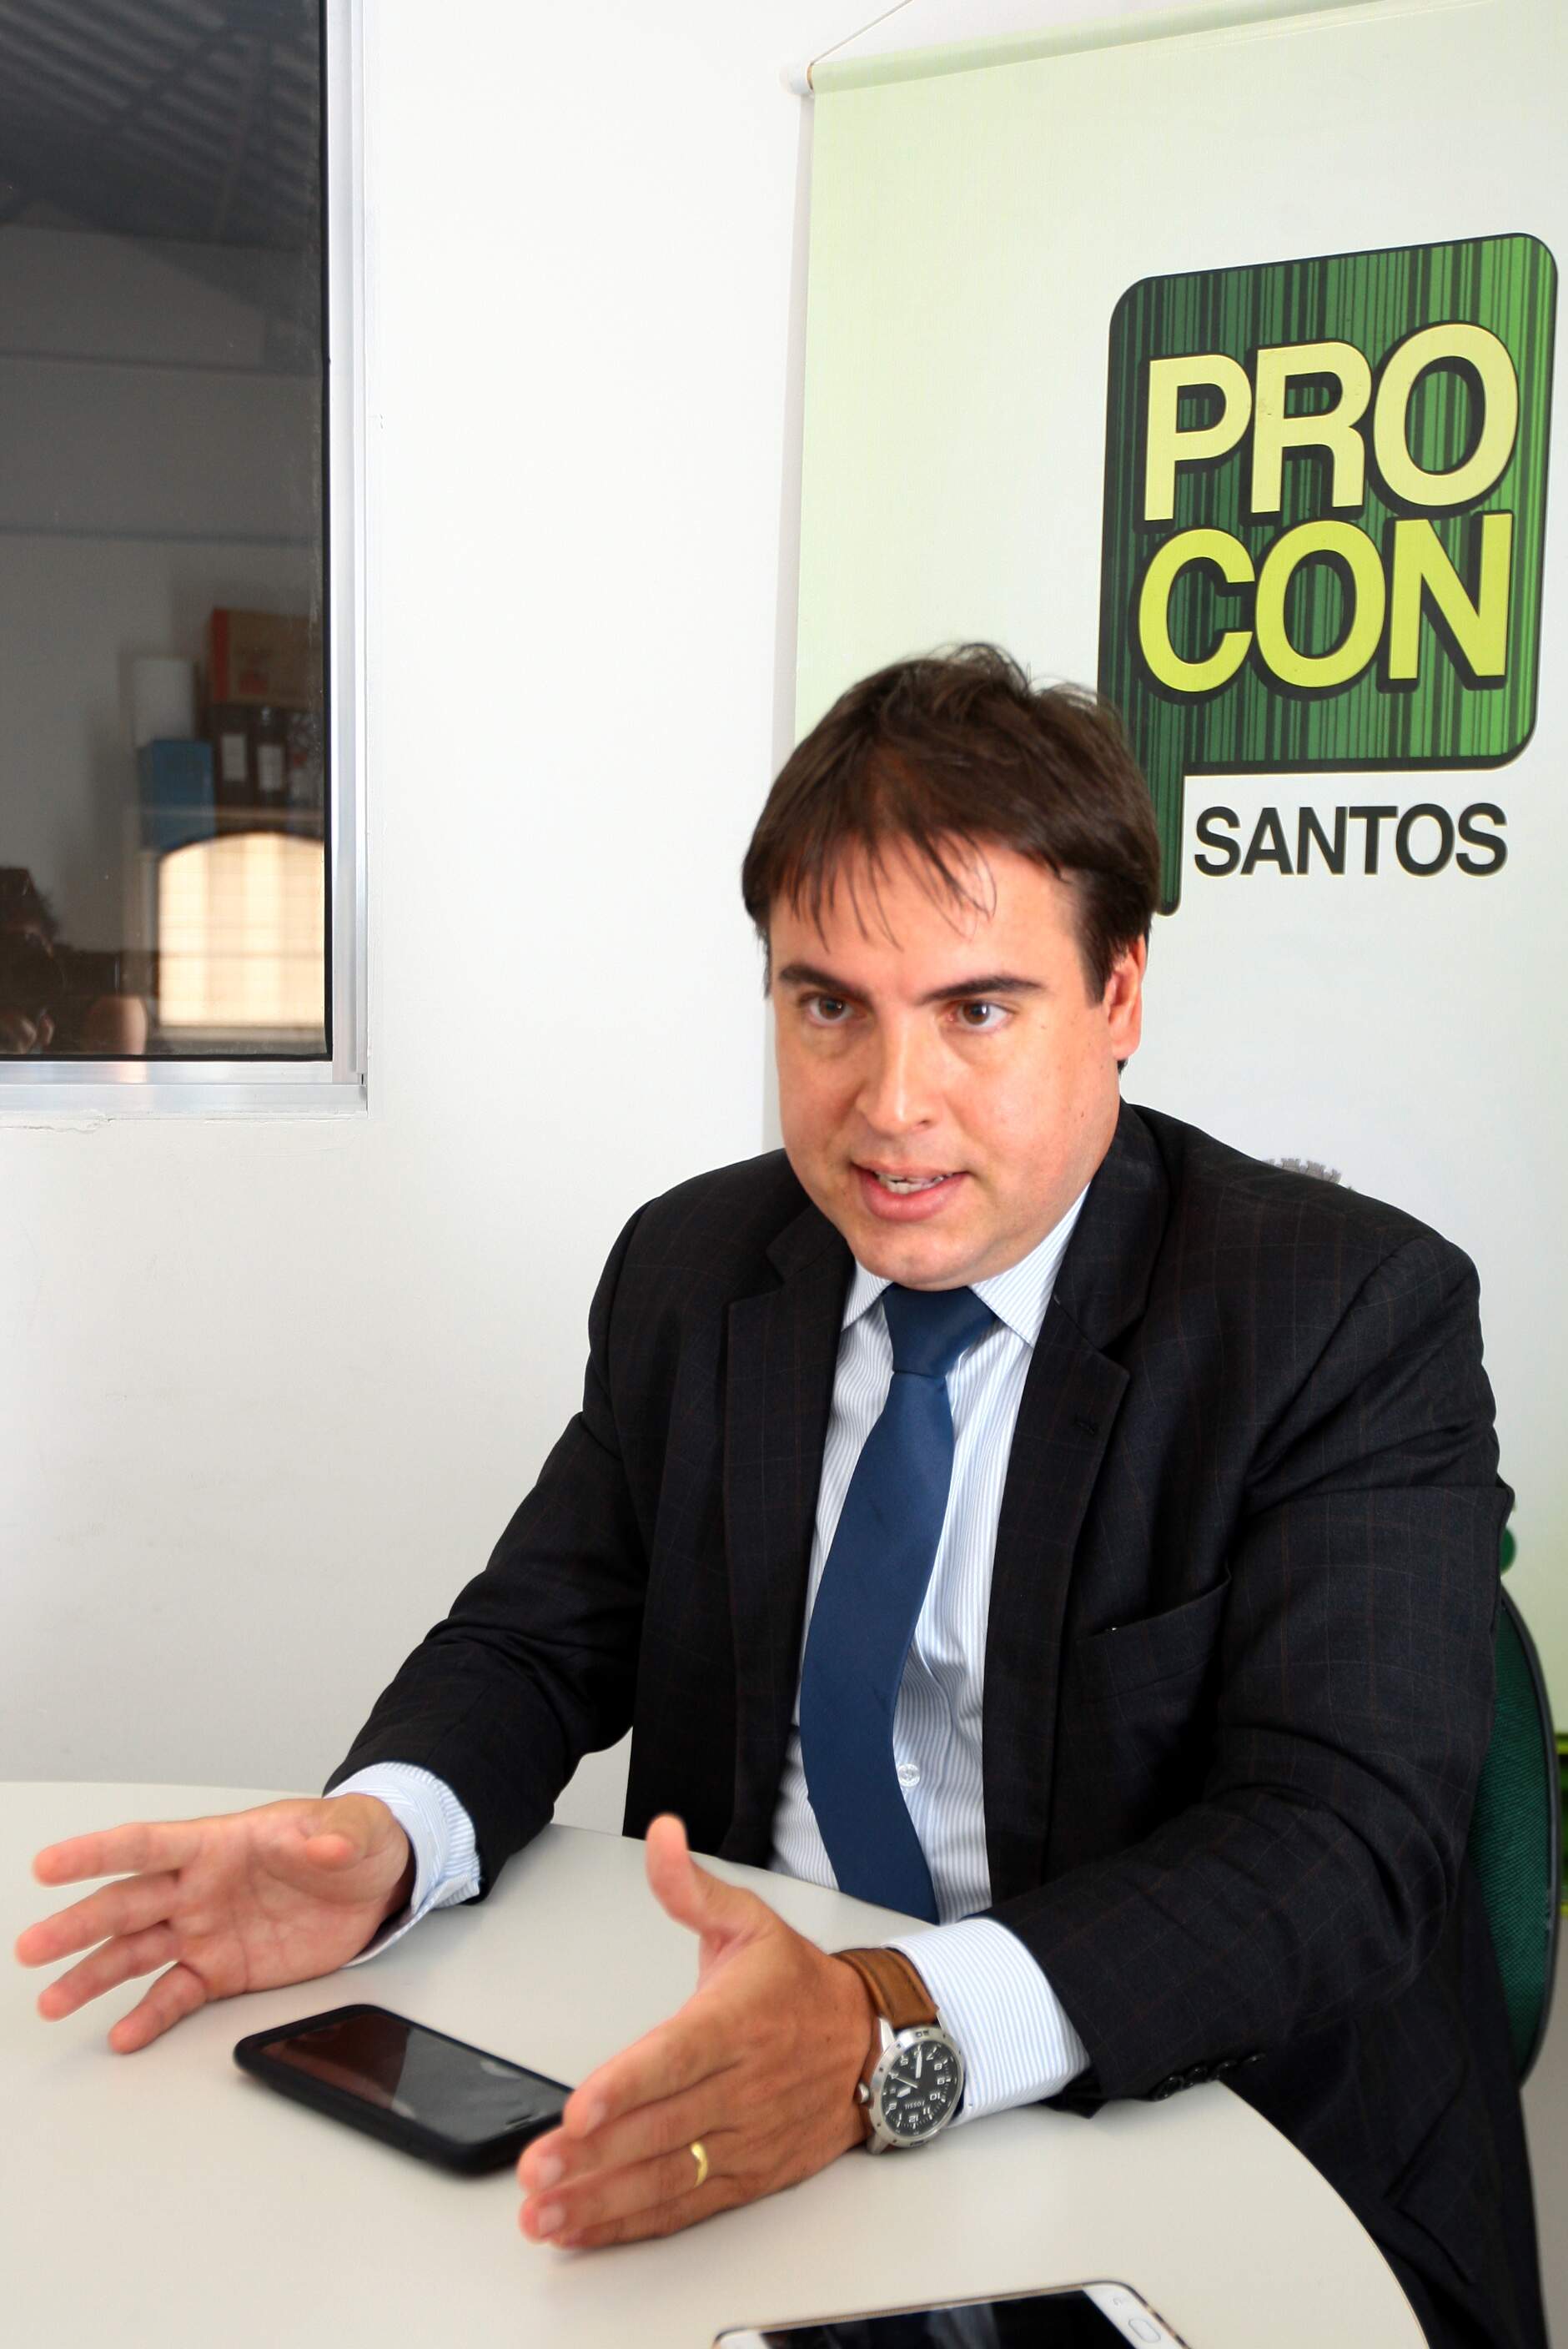 Coordenador do Procon-Santos diz que critério de indenização fixado pela Caixa não condiz com os anseios e as expectativas dos consumidores 